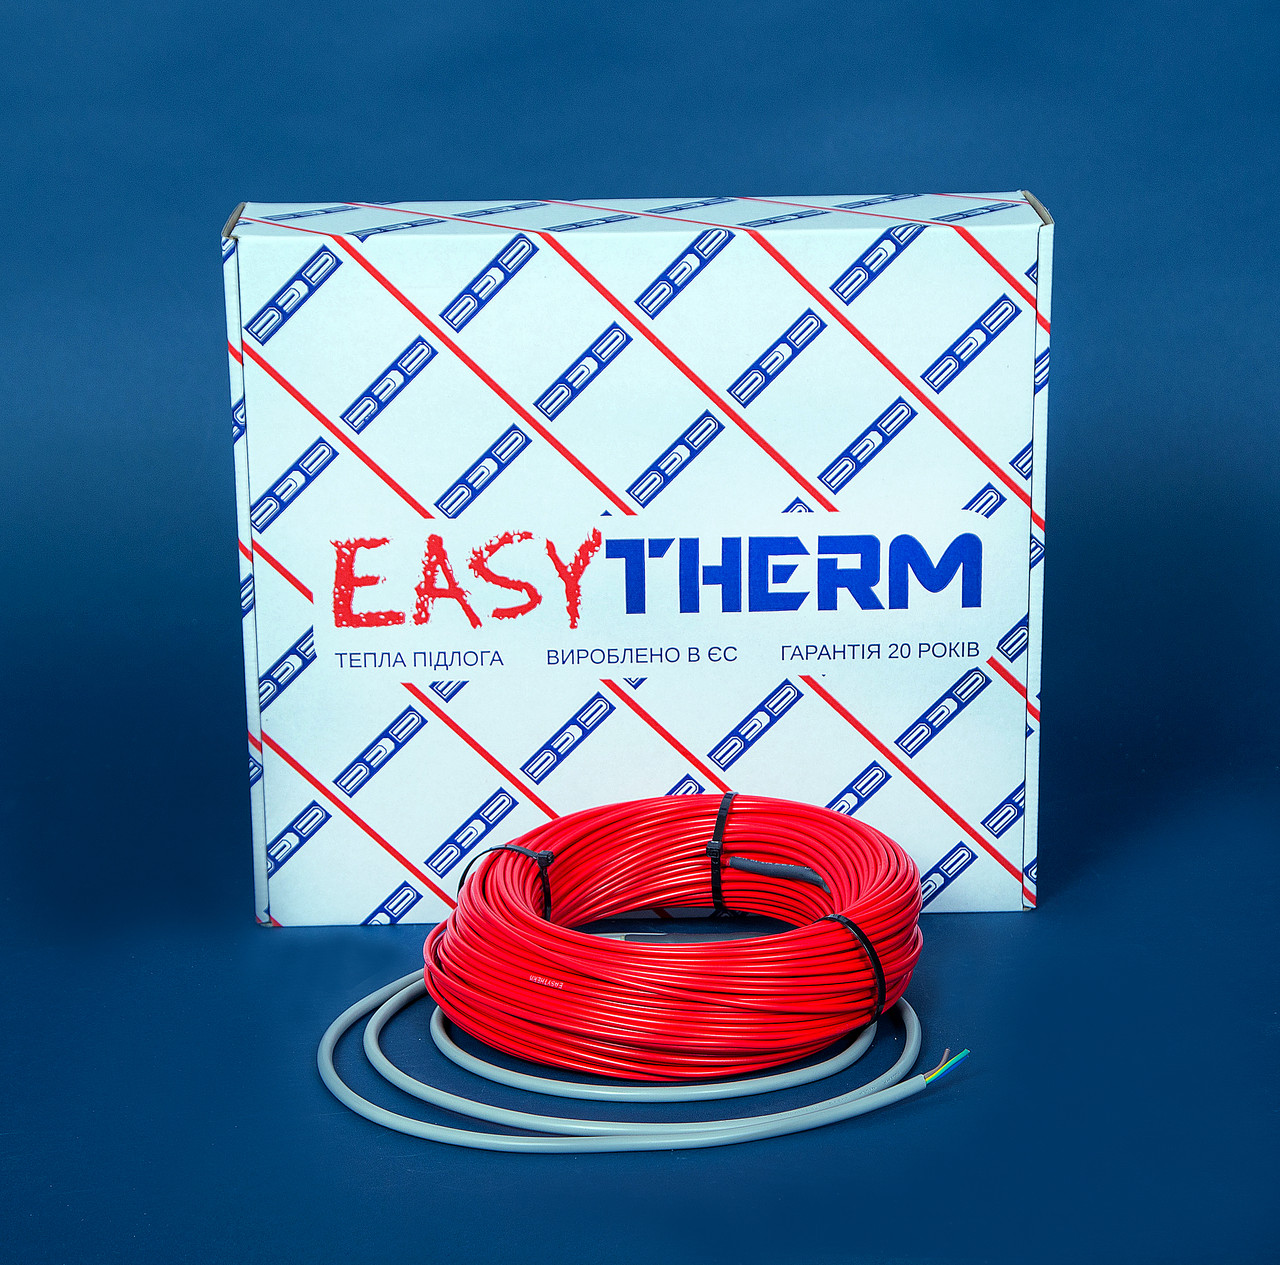 Электрический теплый пол EasyTherm Easycable 26.0 отзывы - изображения 5